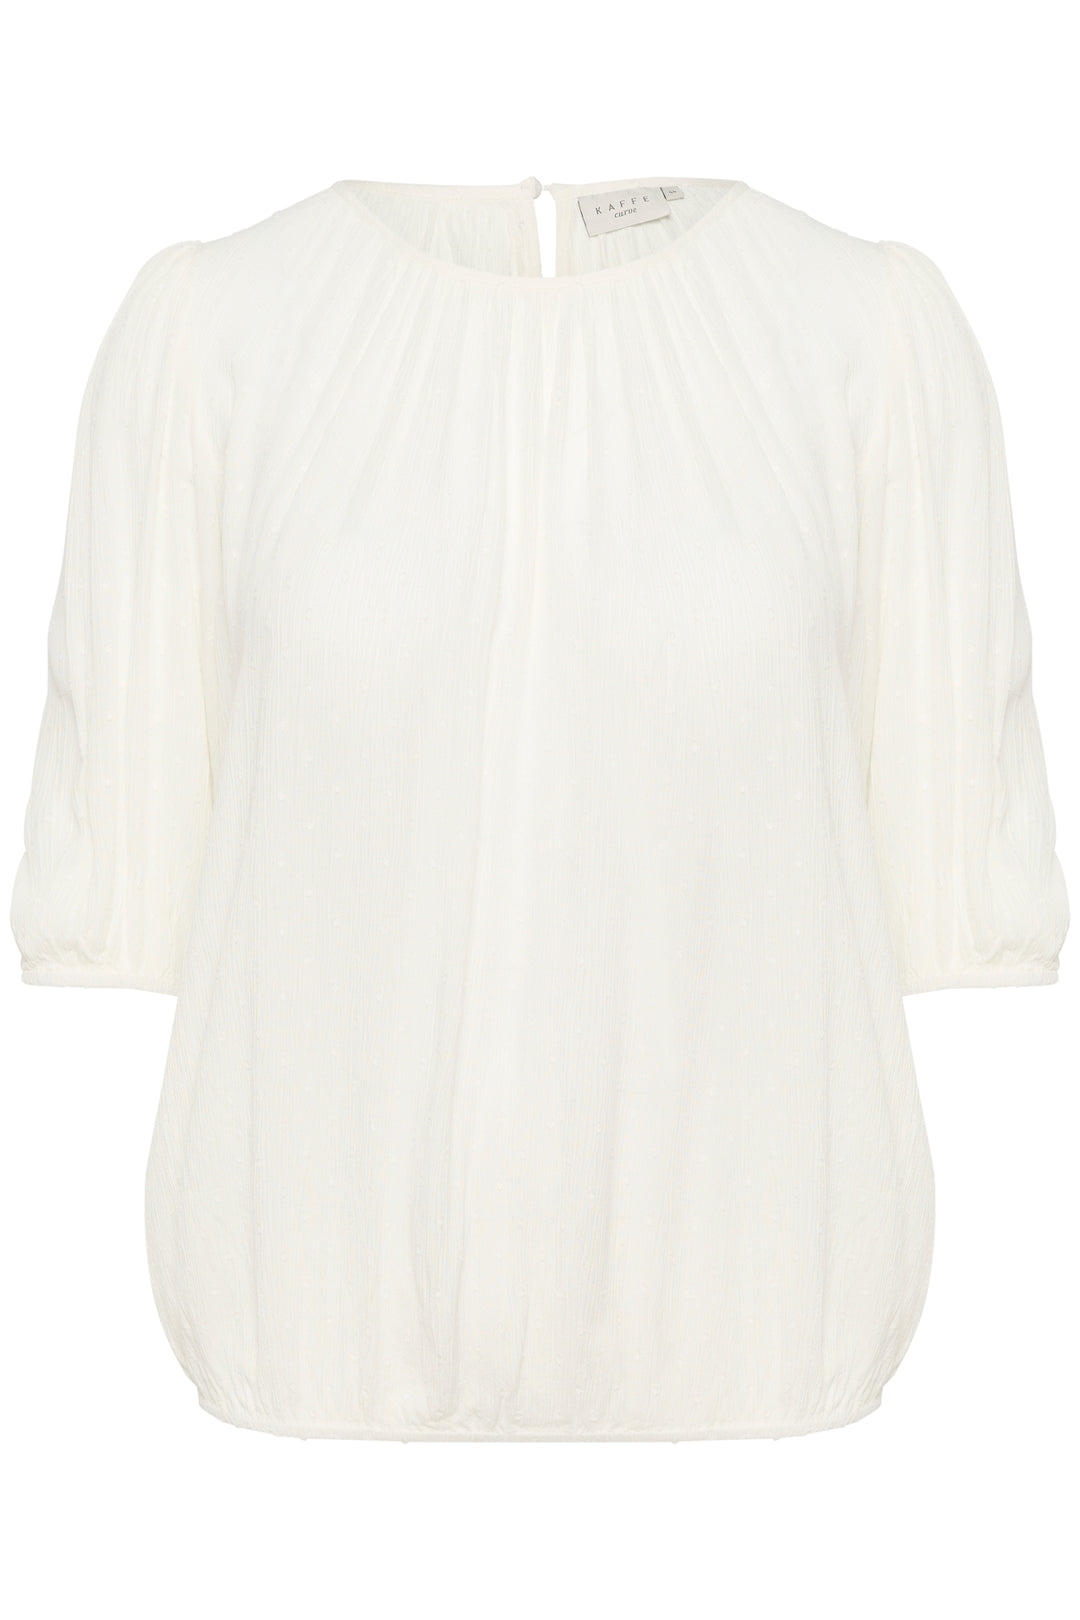 chalk white blouse van ecovero viscose - kaffe curve - - grote maten - dameskleding - kledingwinkel - herent - leuven